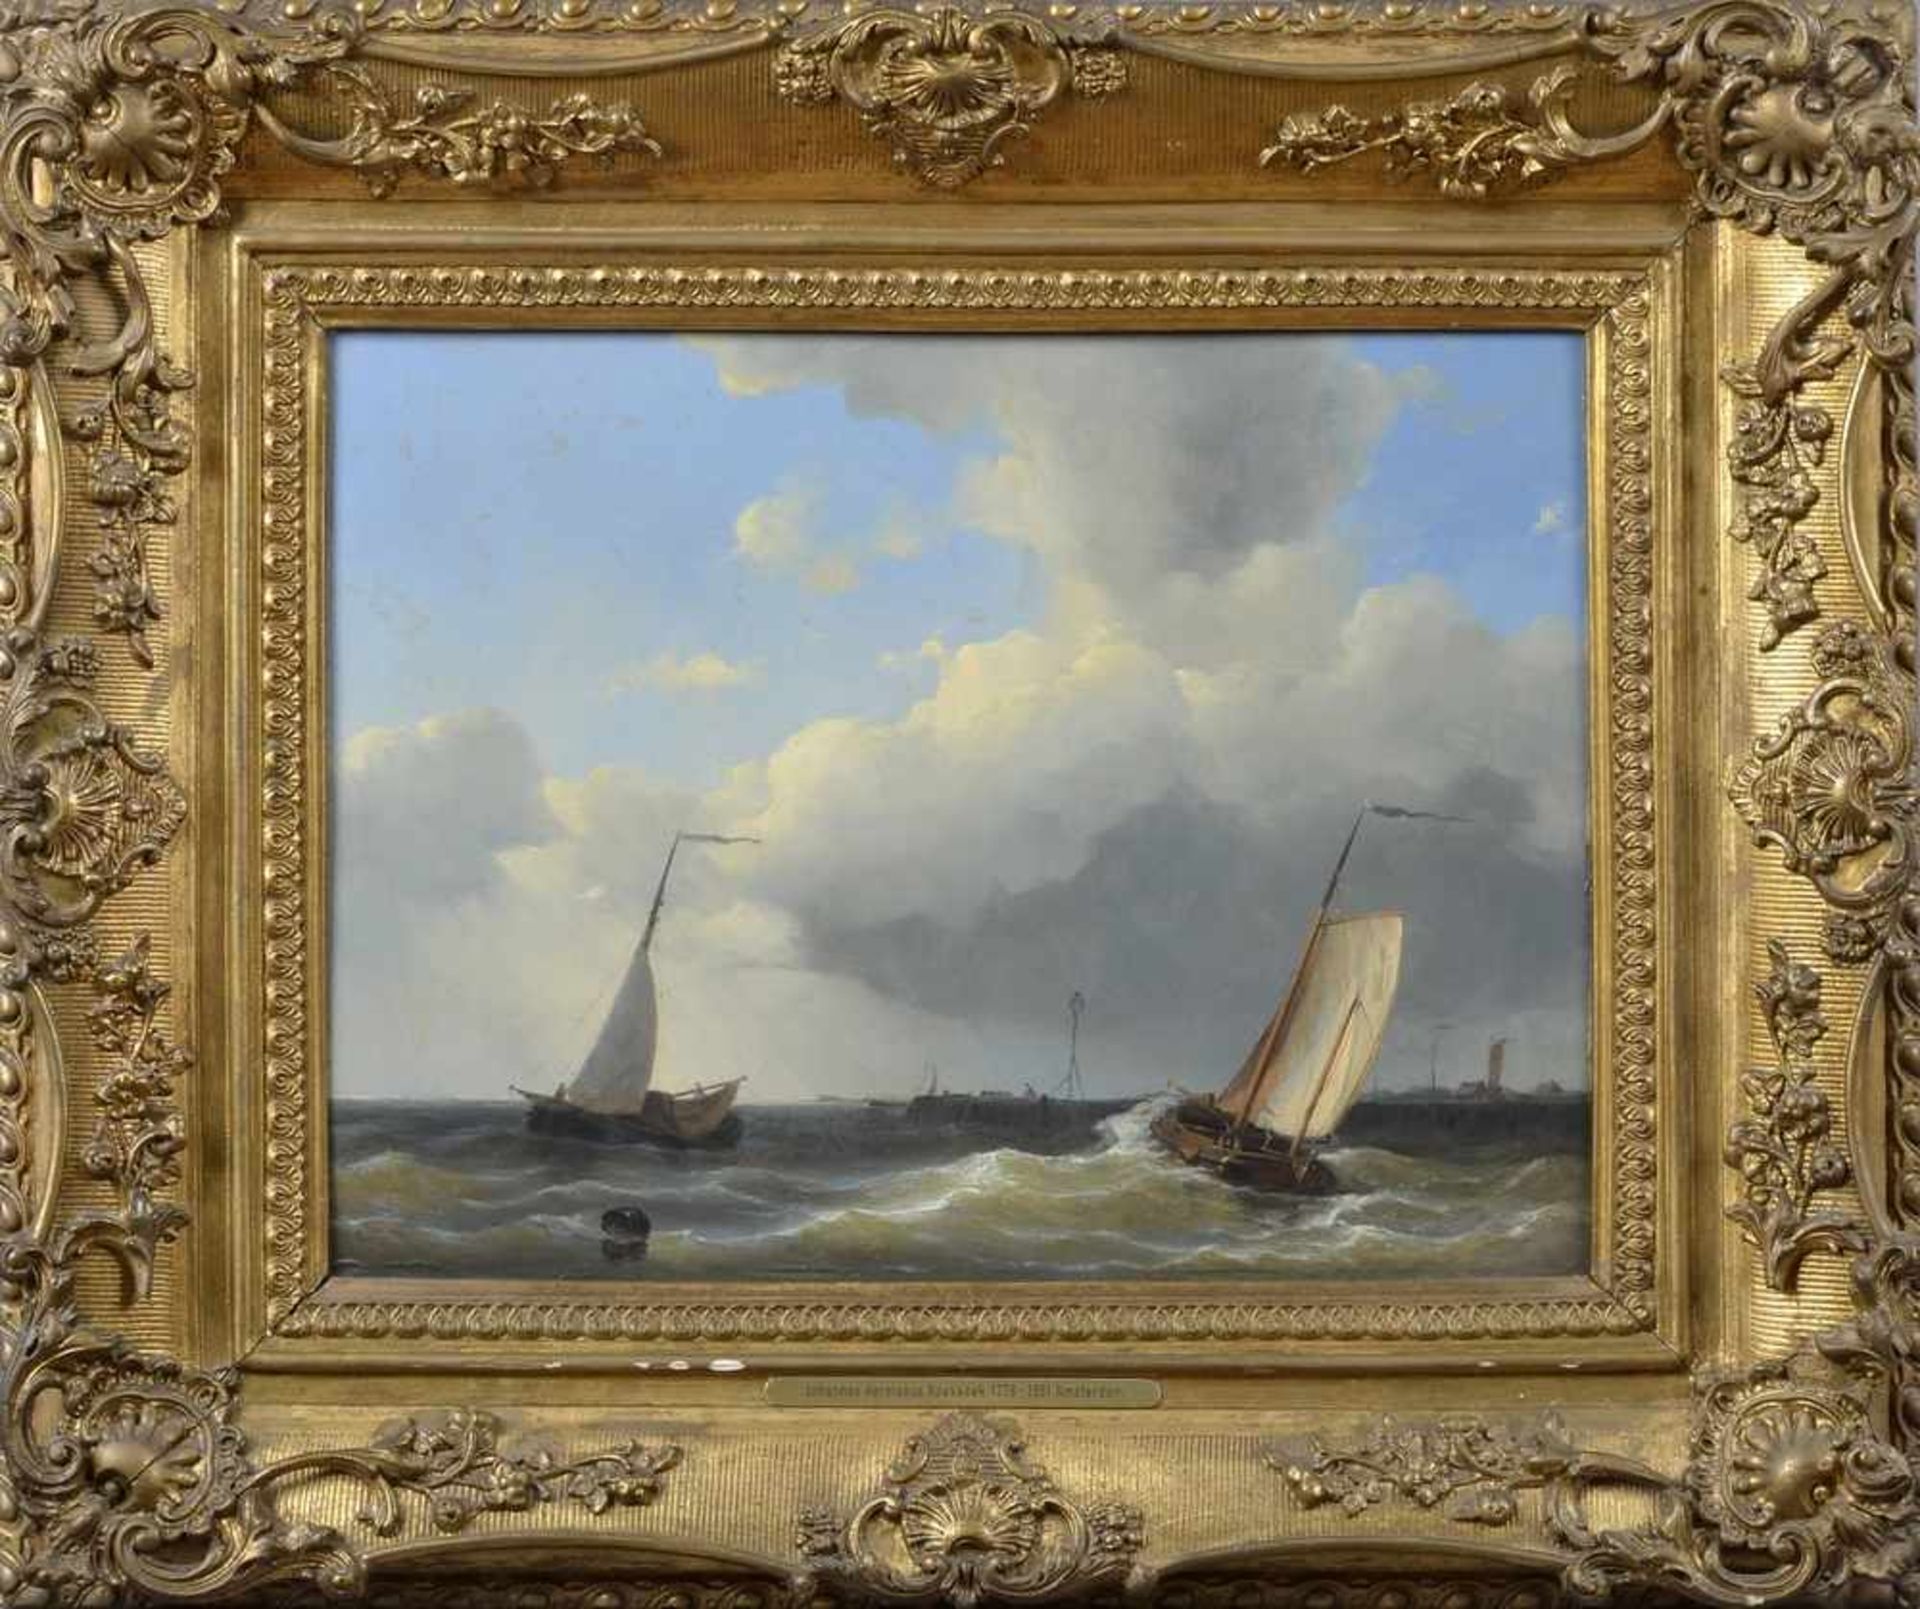 Koekkoek, Johannes Hermanus (1778-1851) "Vor der Hafeneinfahrt", Öl/Holz, verso Kleber "Galerie - Bild 2 aus 3